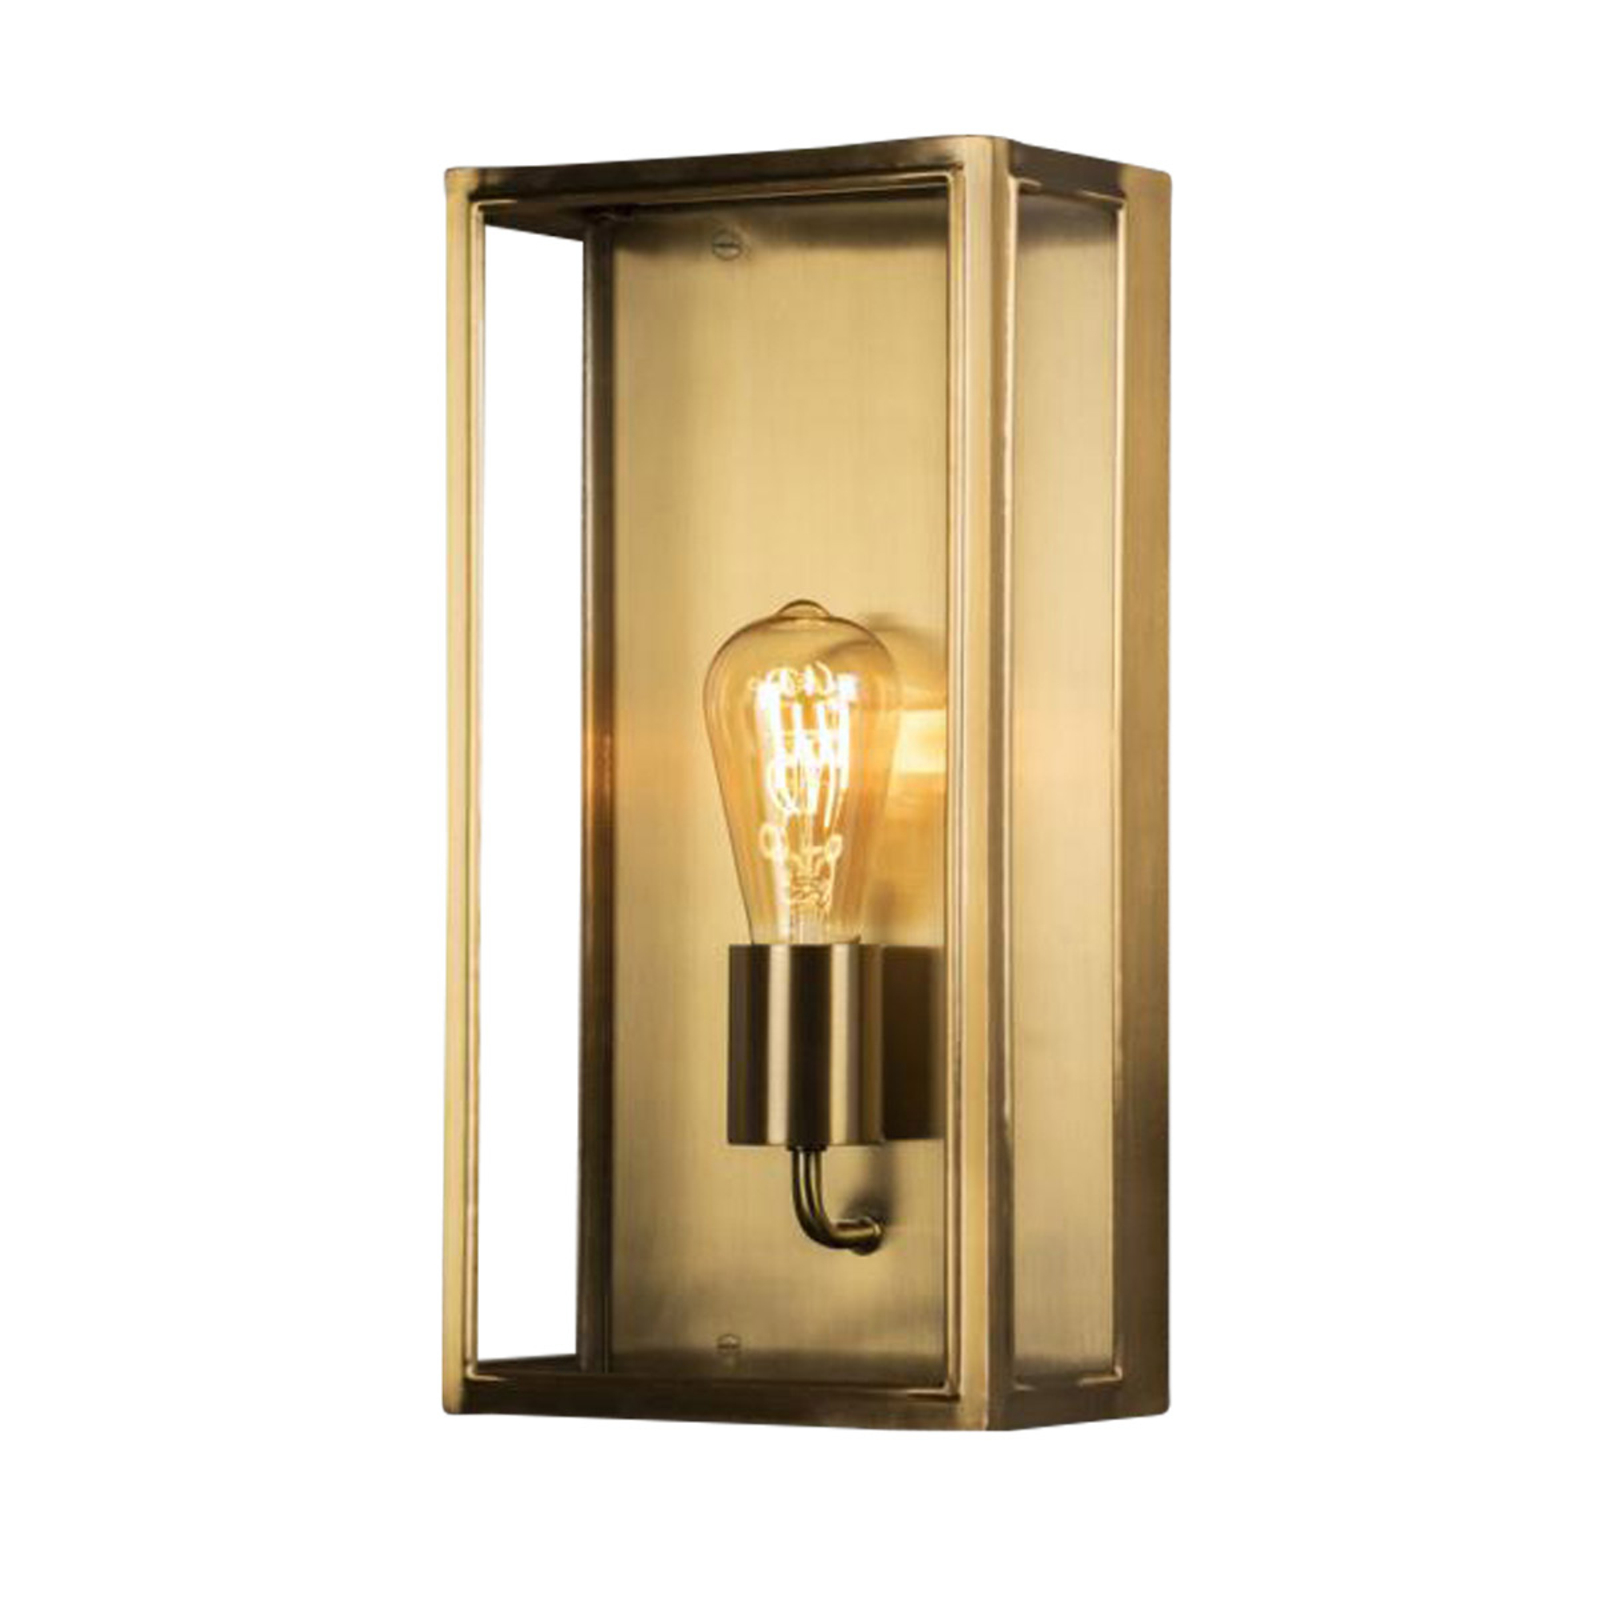 Carpi outdoor wall lamp, brass, width 20.5cm